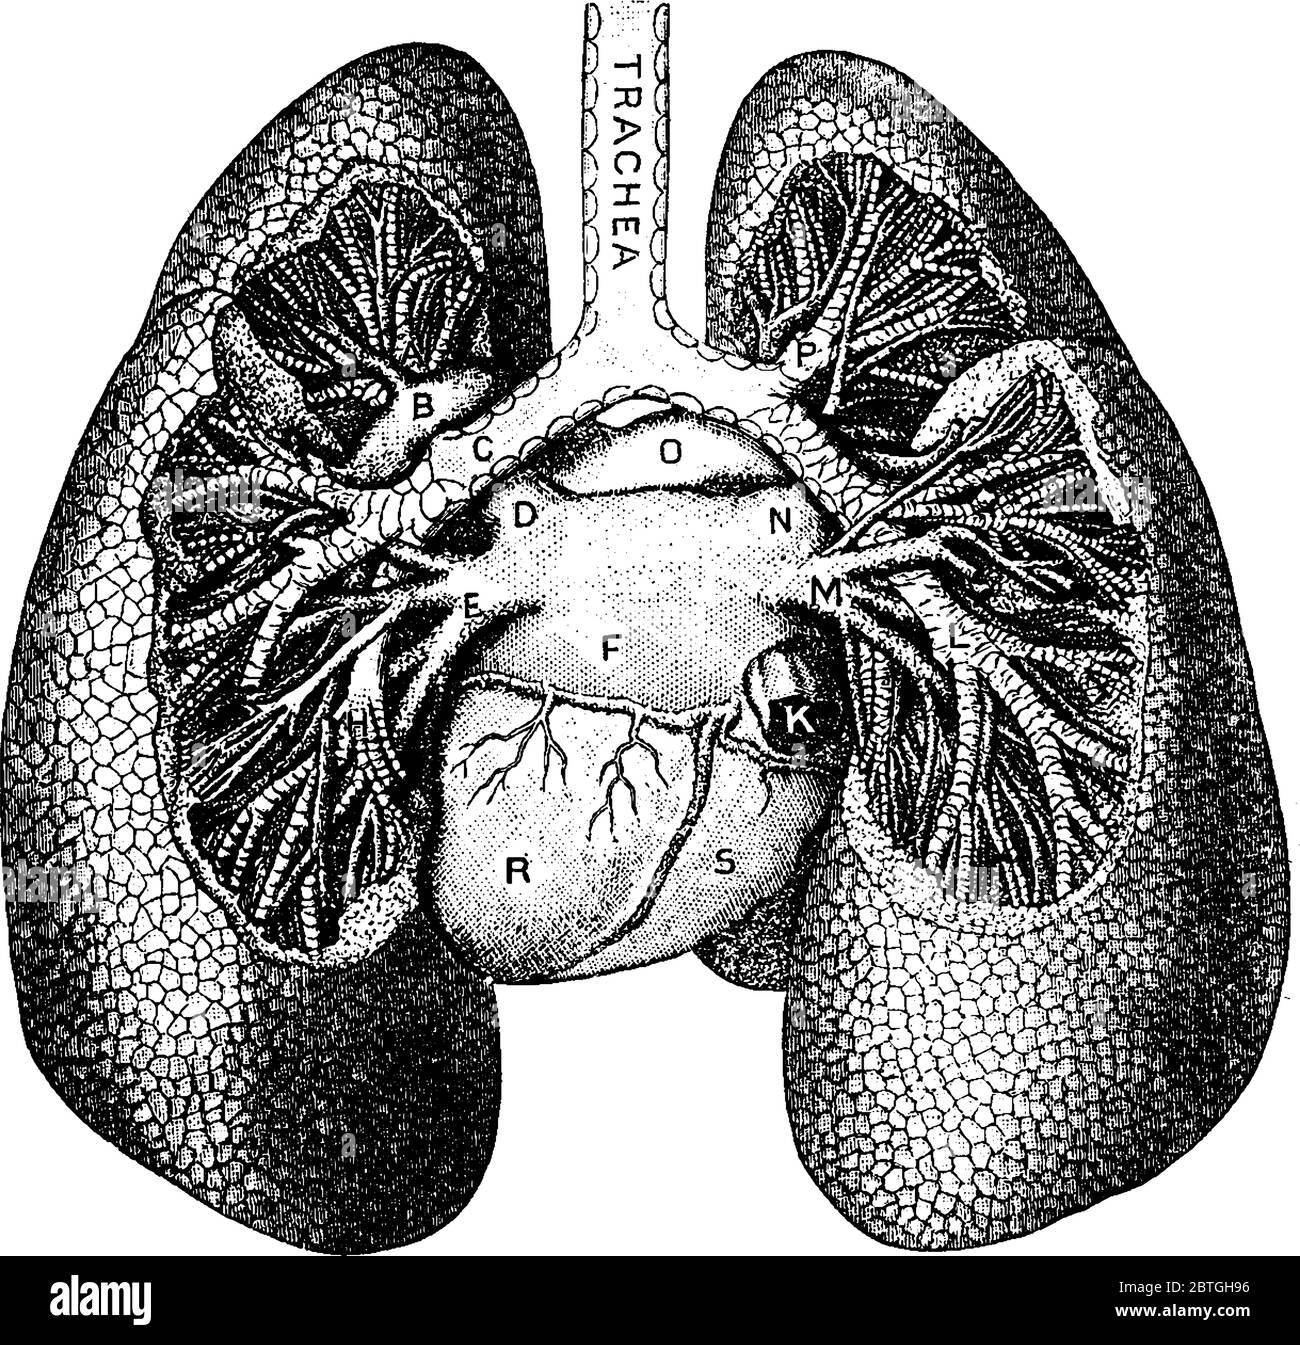 L'ossigeno entra nei polmoni umani come parte dell'aria che respirano, con le parti rappresentate, A, divisione del bronco sinistro al lobo superiore; B, ramo sinistro Illustrazione Vettoriale